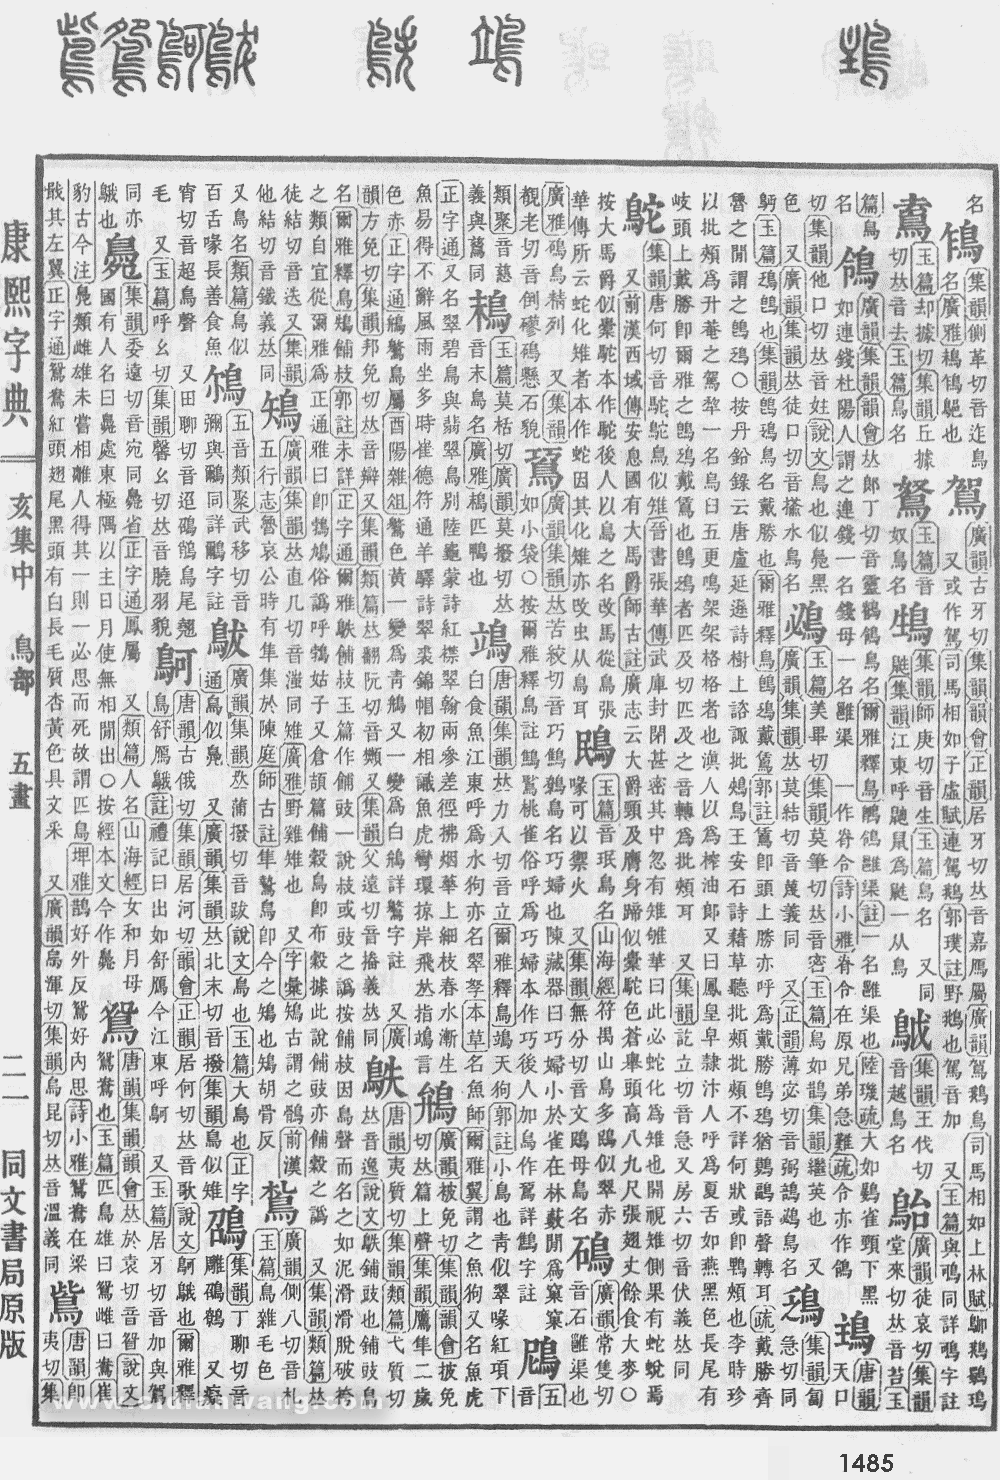 康熙字典掃描版第1485頁